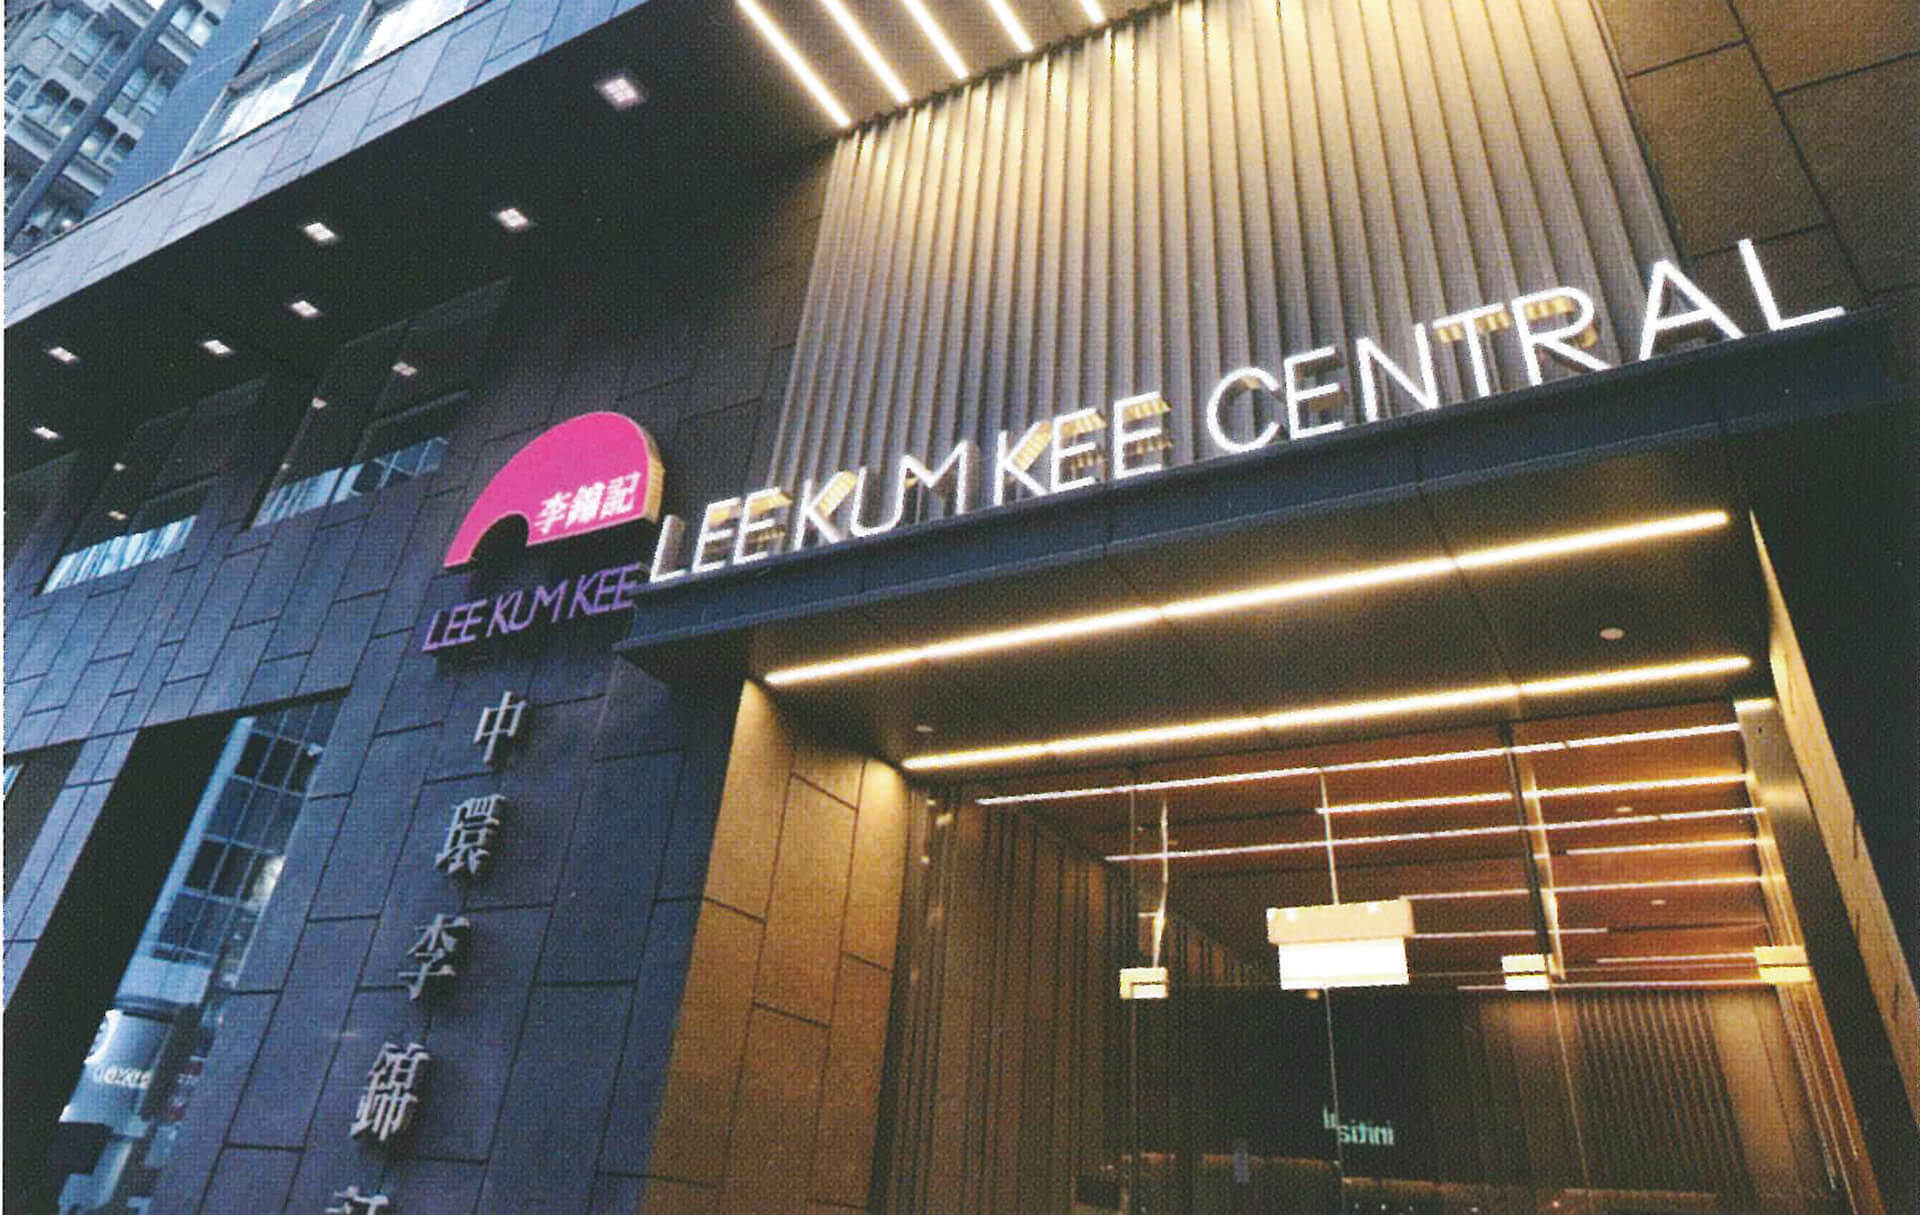 Lee Kum Kee Central